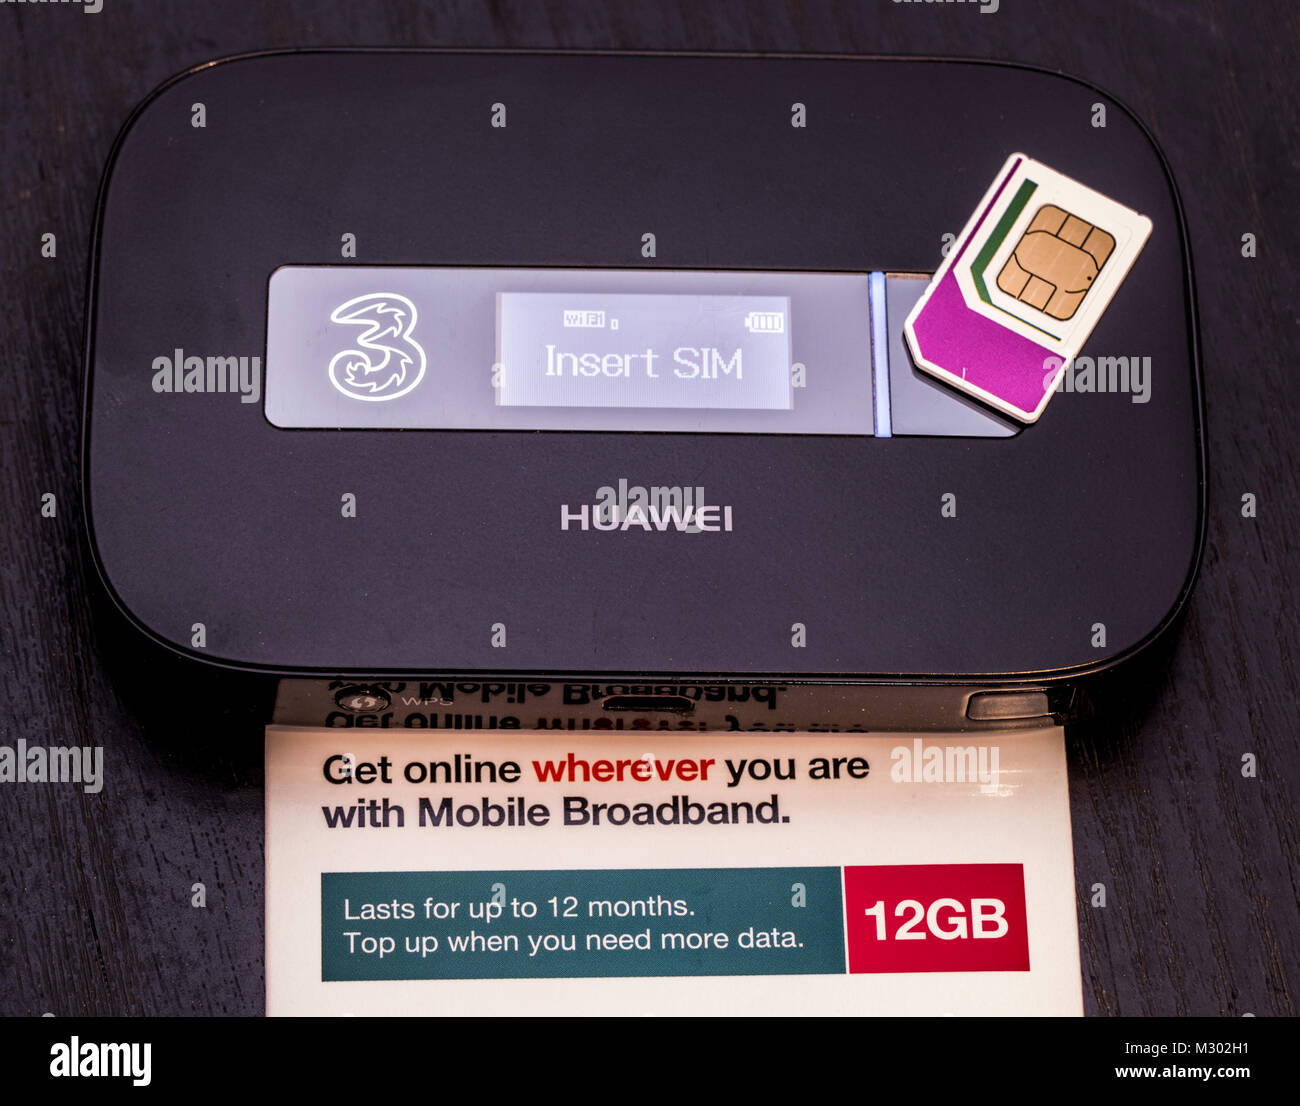 Drei Data-SIM-Karte mit 12 GB an Daten, die für 12 Monate dauert, auf einem Huawei mobile WLAN-Router, UMTS-Gerät. England, UK. Stockfoto